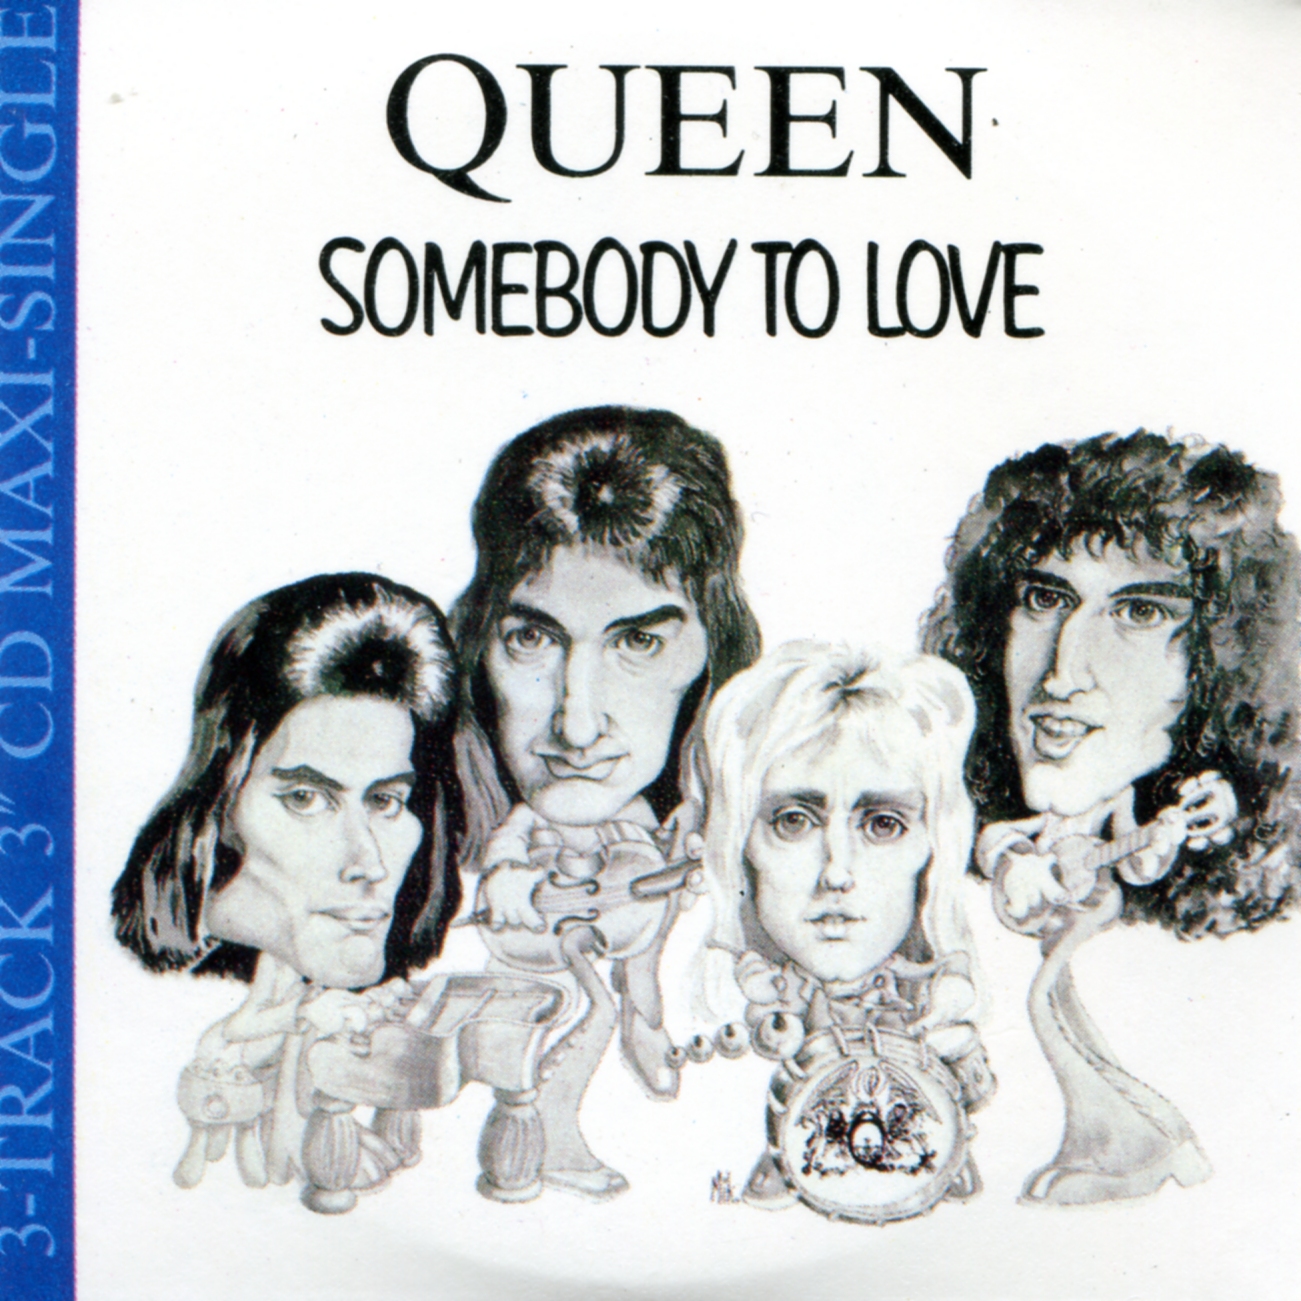 Сомбади ту лов. Queen Somebody to Love. Somebody to Love Queen альбом. Somebody to Love Квин. Queen Somebody to Love обложка.